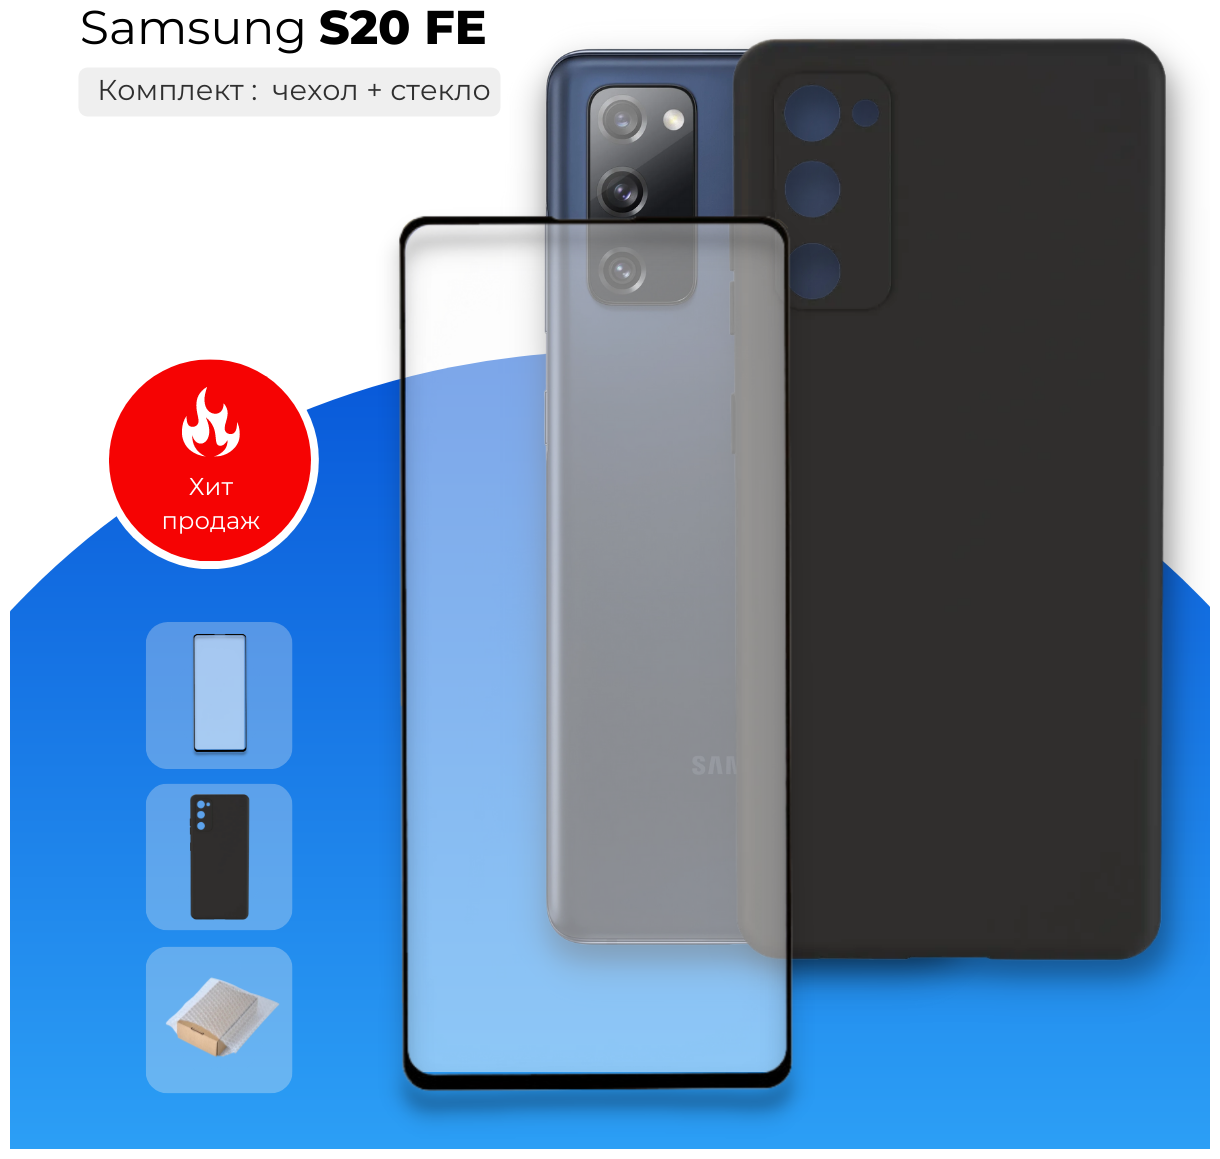 Комплект: Защитный противоударный матовый чехол №80 + полноэкранное стекло для Samsung Galaxy S20 FE